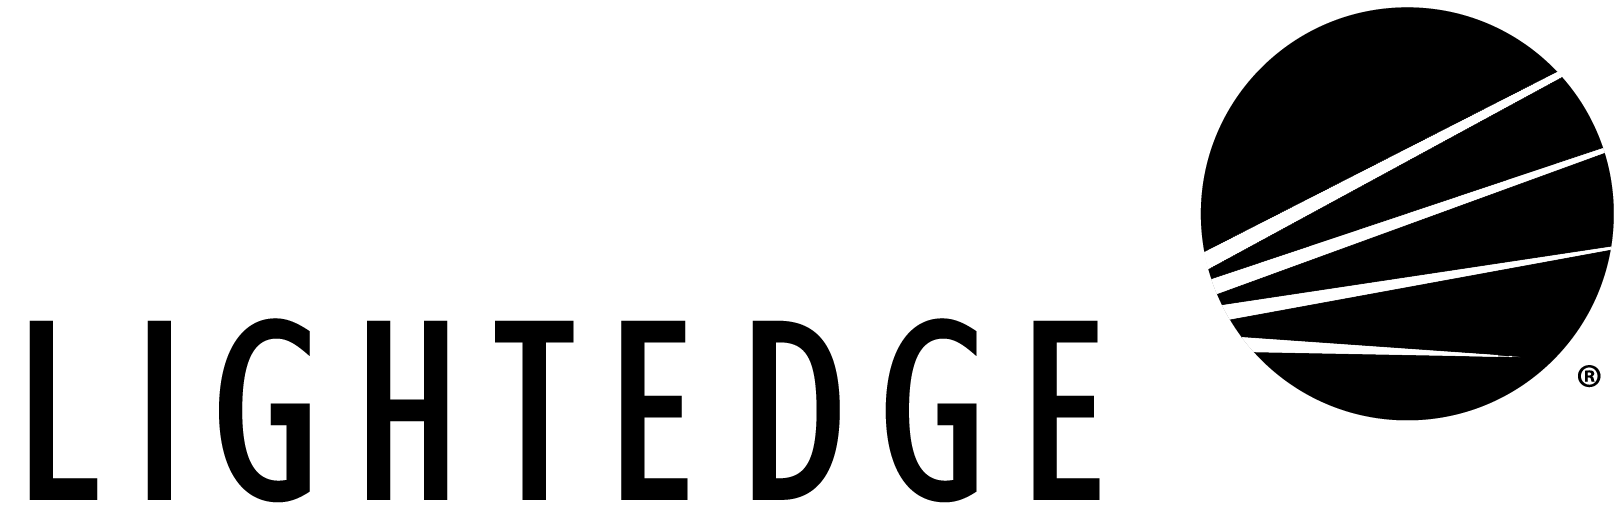 lightedge-logo